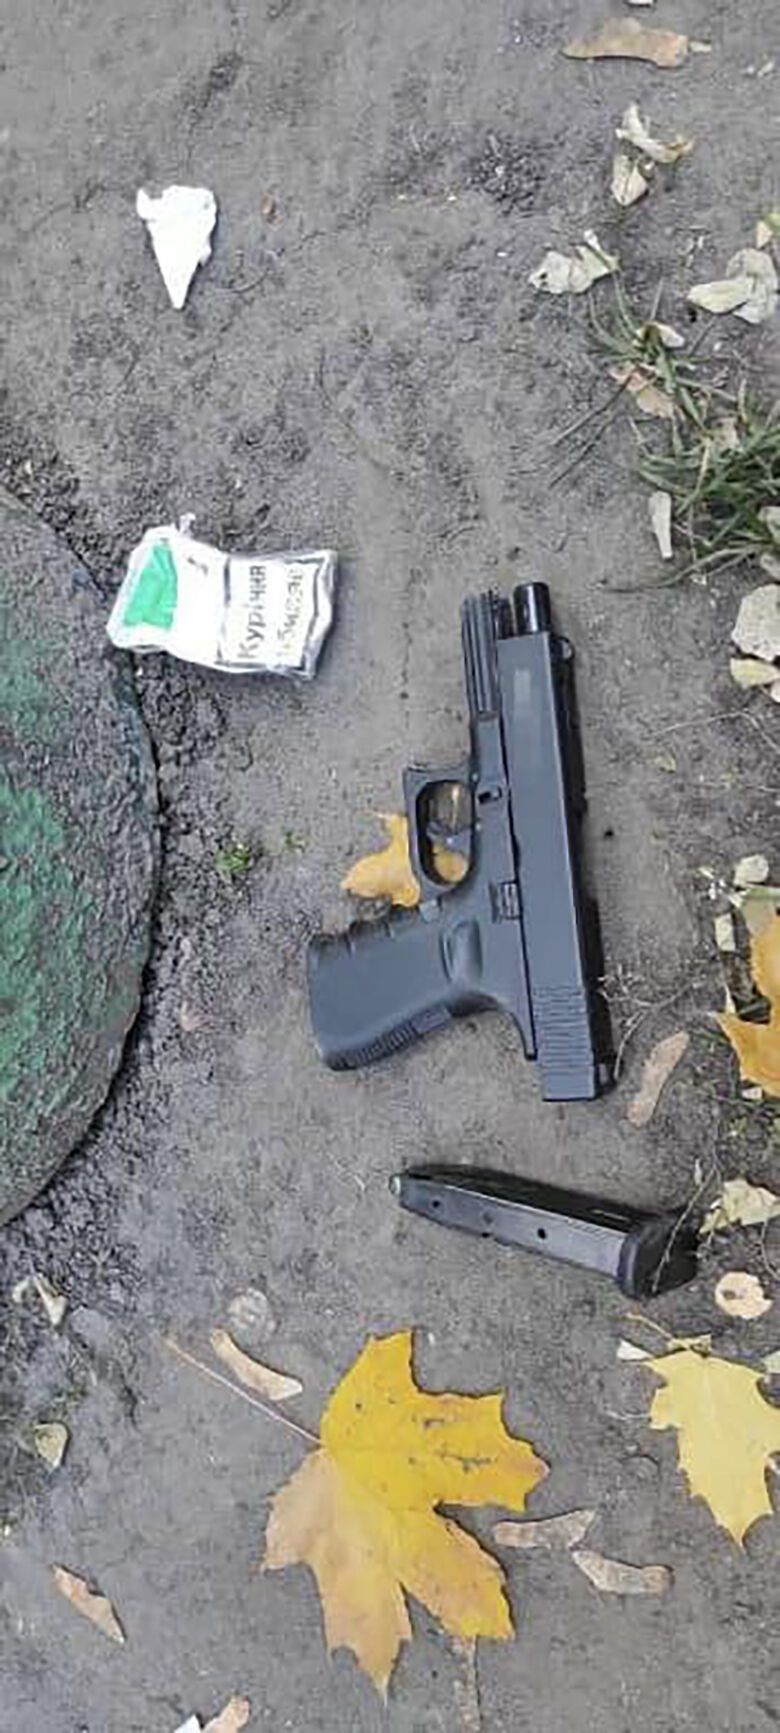 В Киеве мужчина под наркотиками устроил стрельбу из пистолета на улице. Фото